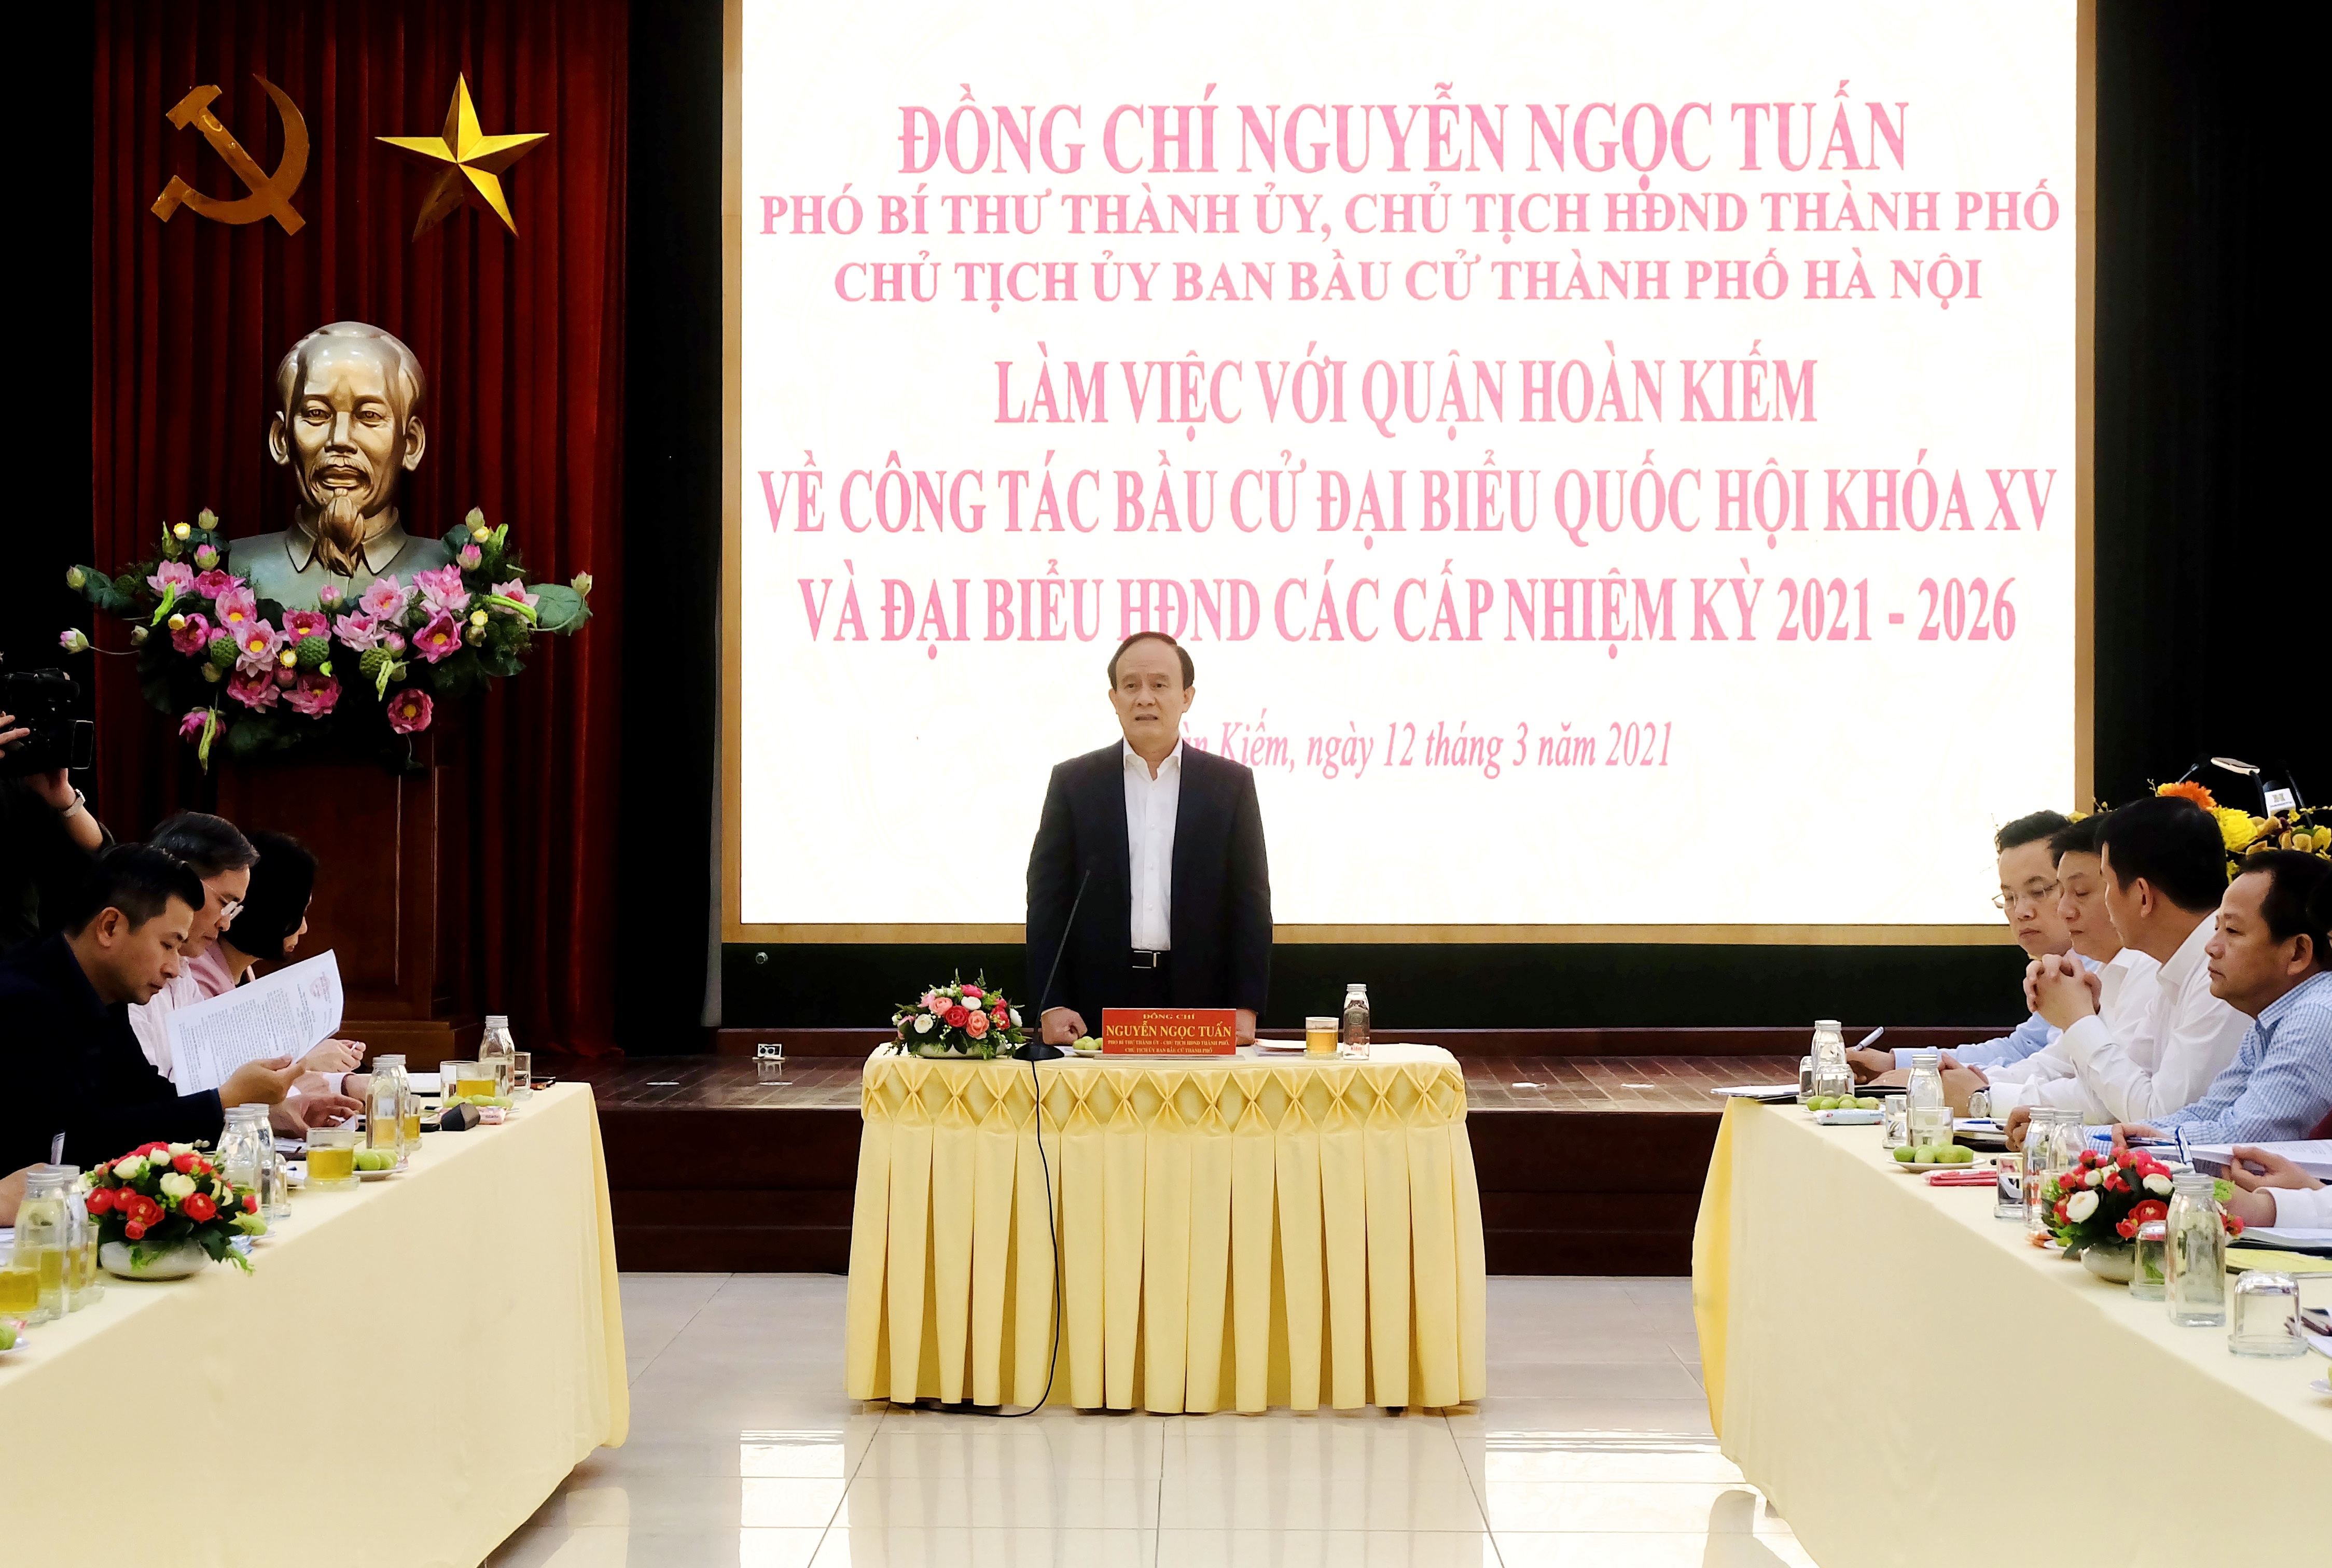 Chủ tịch Hội đồng nhân dân Thành phố kiểm tra công tác bầu cử tại quận Hoàn Kiếm